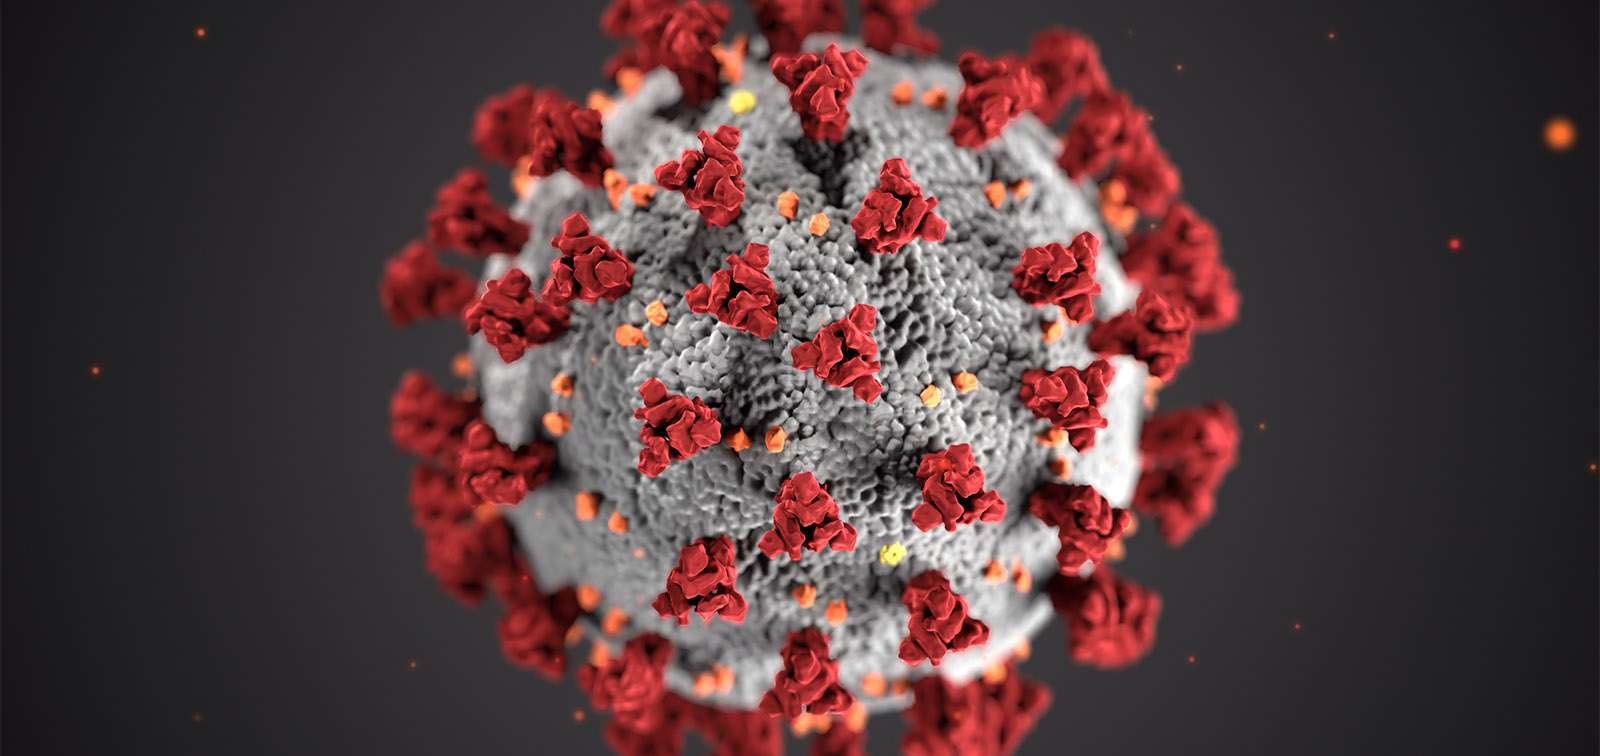 कोरोना वायरस का बदलता आकार, एंटीबॉडी को वायरस के खात्मे में कर सकती है मदद